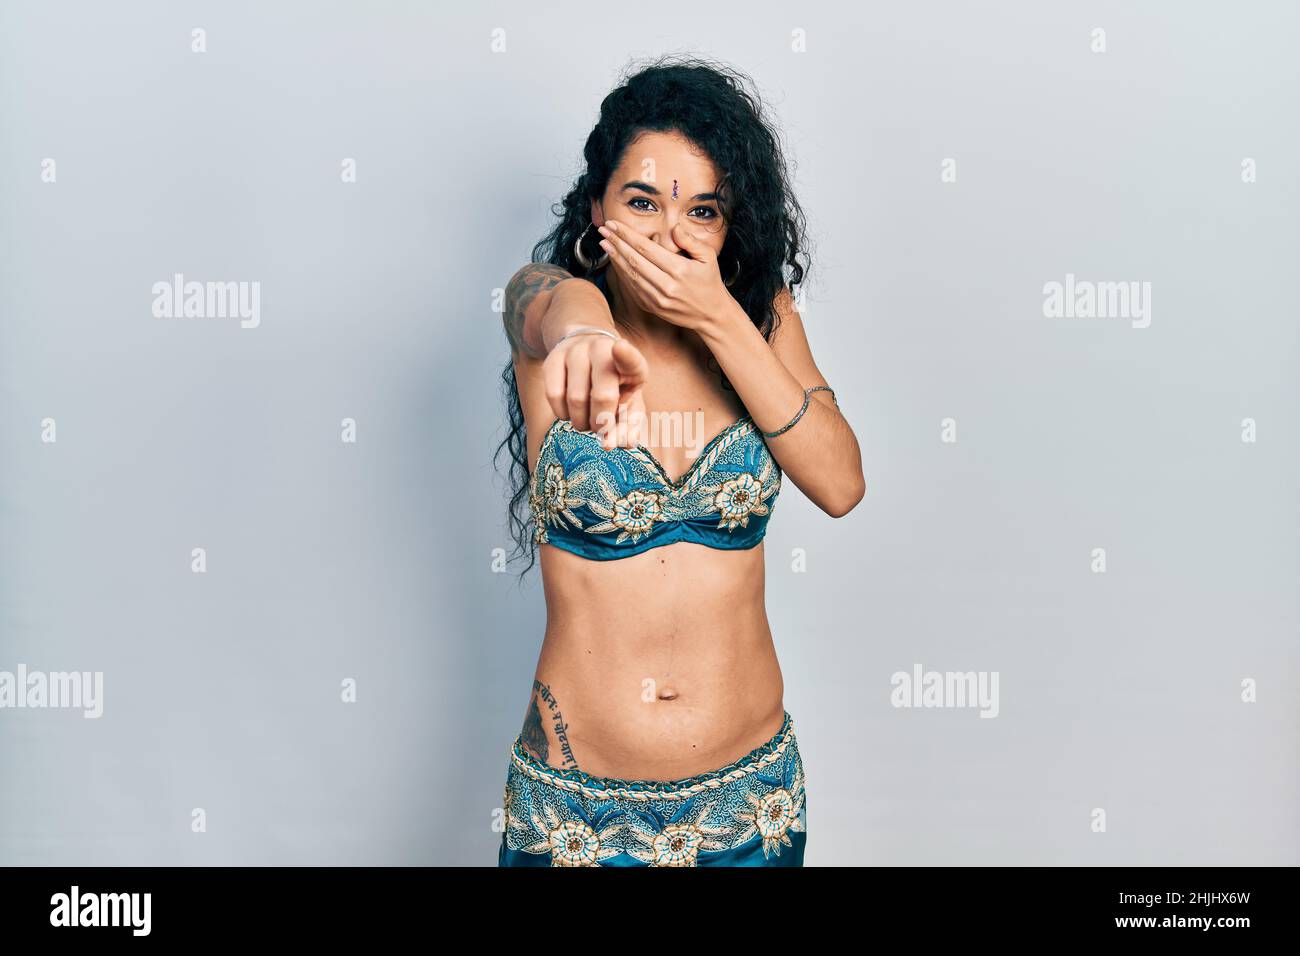 Junge Frau in Bindi- und traditionellen Bauchtanzkleidung, die Sie anlacht, mit dem Finger auf die Kamera zeigt, mit der Hand über dem Mund, Schamgefühl Stockfoto